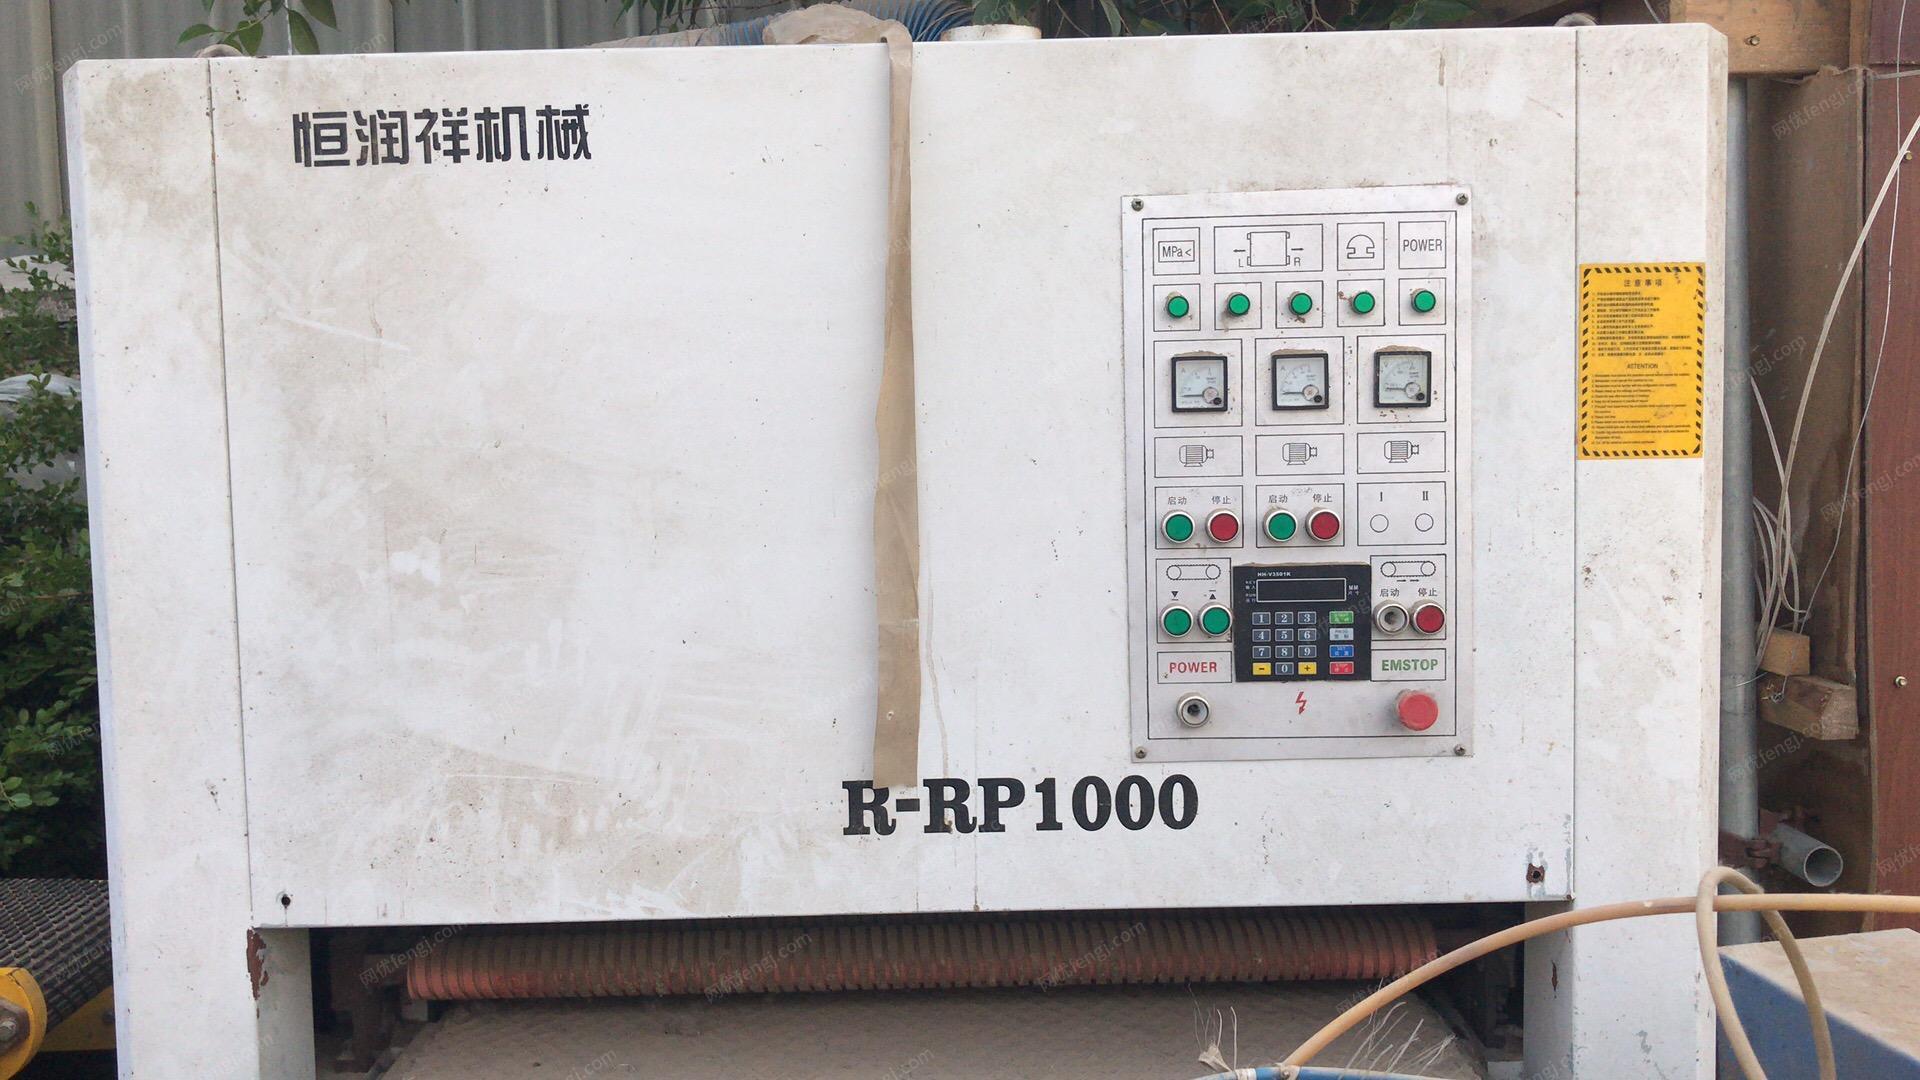 木材加工厂处理R-RP1000砂光机，MJ3971AX300卧式带锯机各1台（详见图）